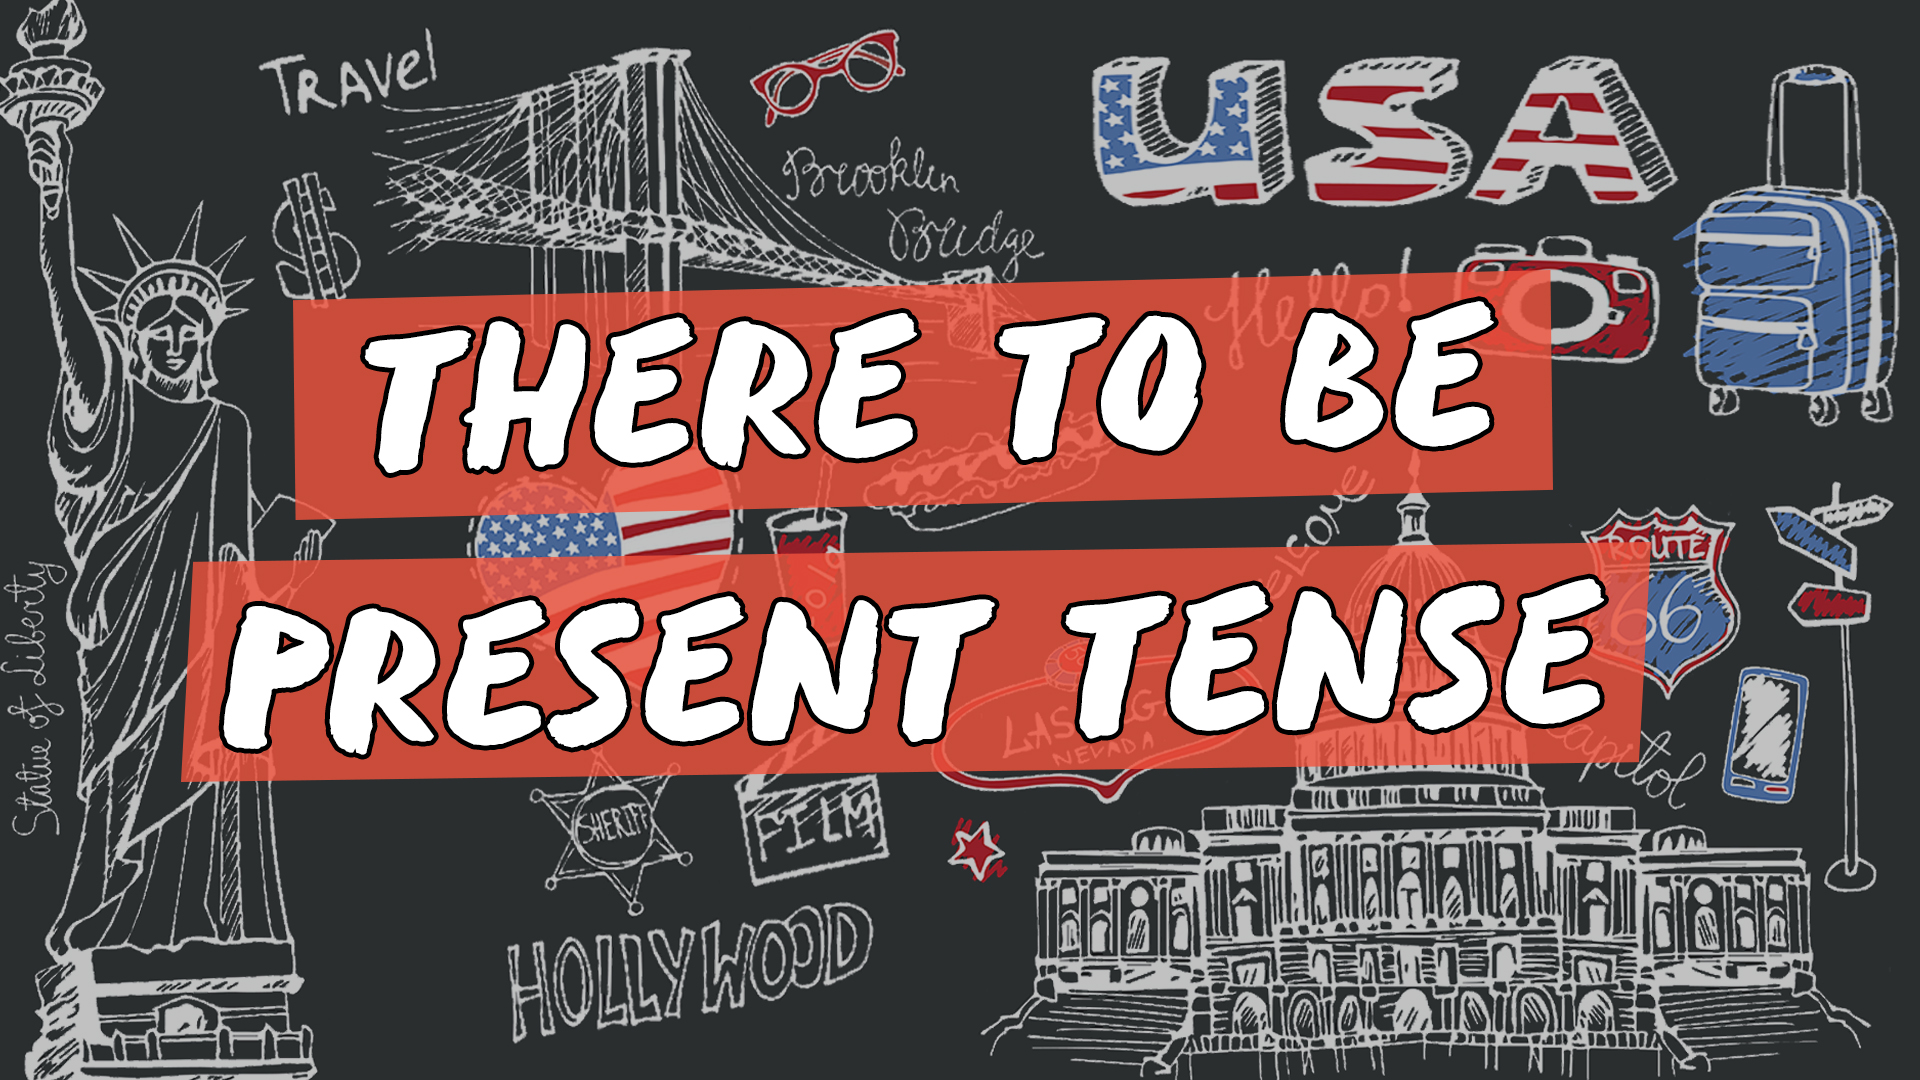 "There To Be / Present Tense" escrito sobre ilustração de vários ícones estadunidenses